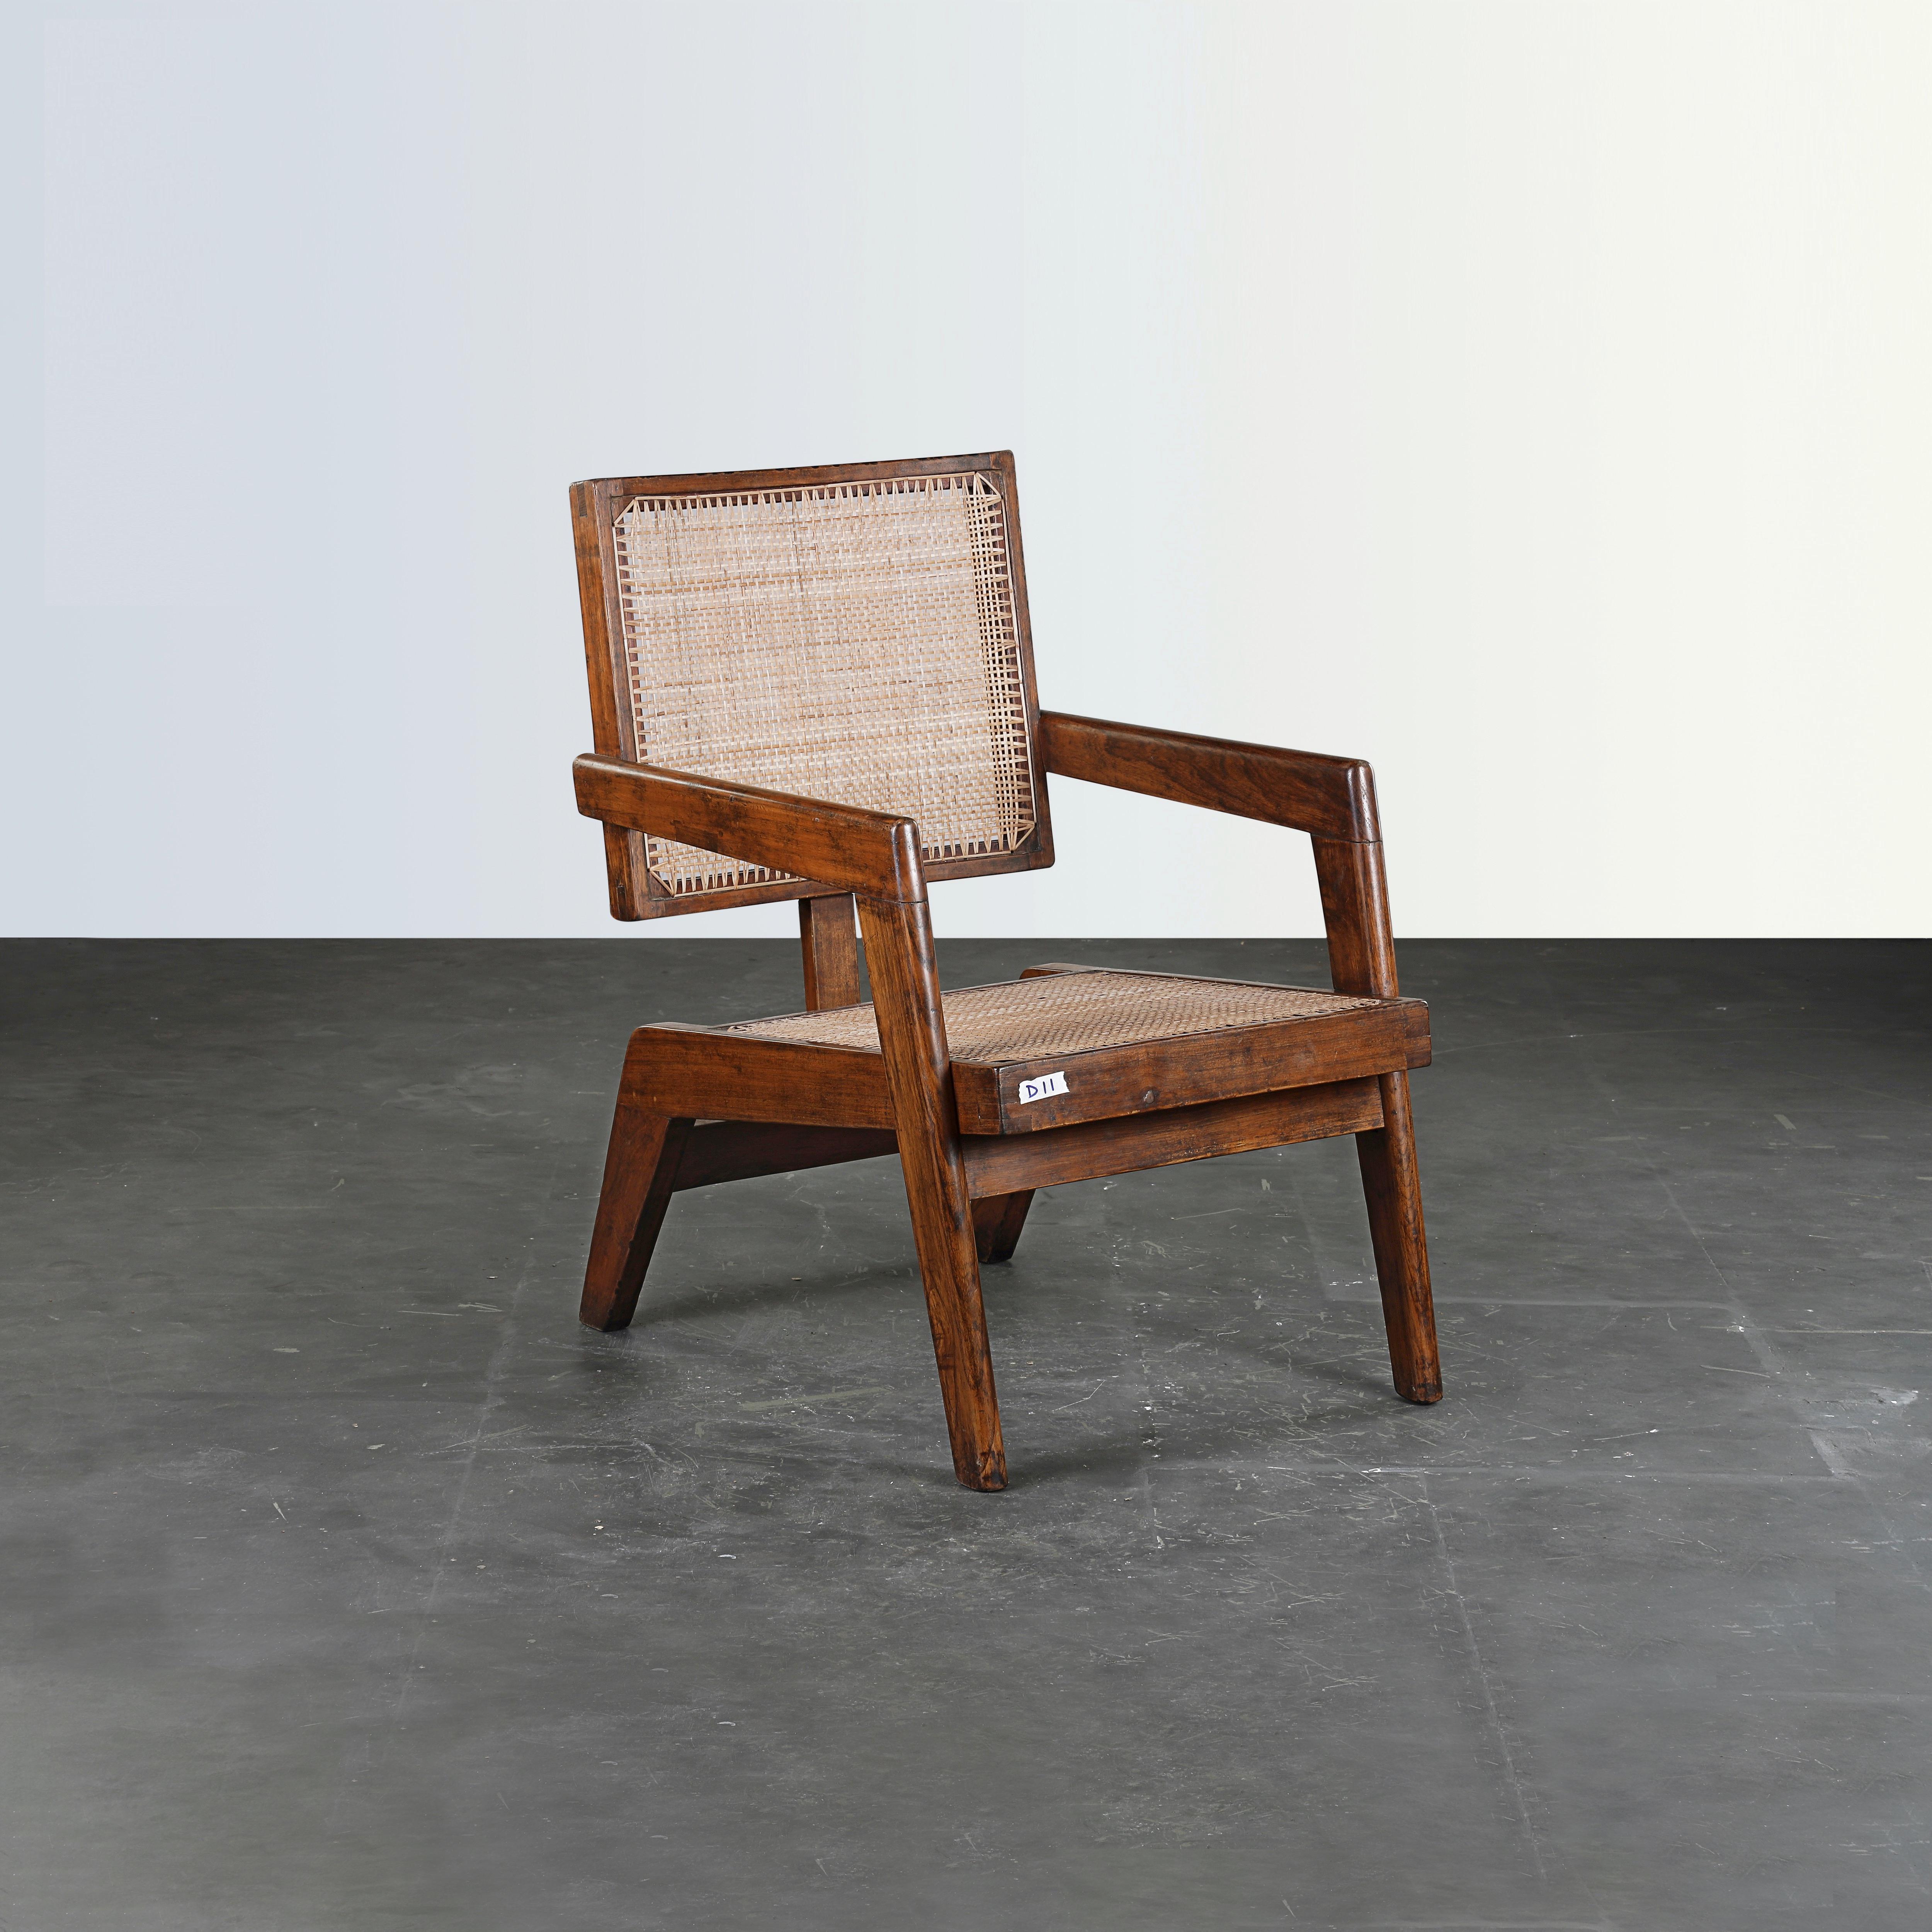 Cette chaise est une pièce emblématique du design. Il est brut dans sa simplicité et présente une matière légèrement patinée. Sa forme est merveilleusement fragile et sa couleur magnifique. Nous ne les restaurons pas trop. Nous conservons donc